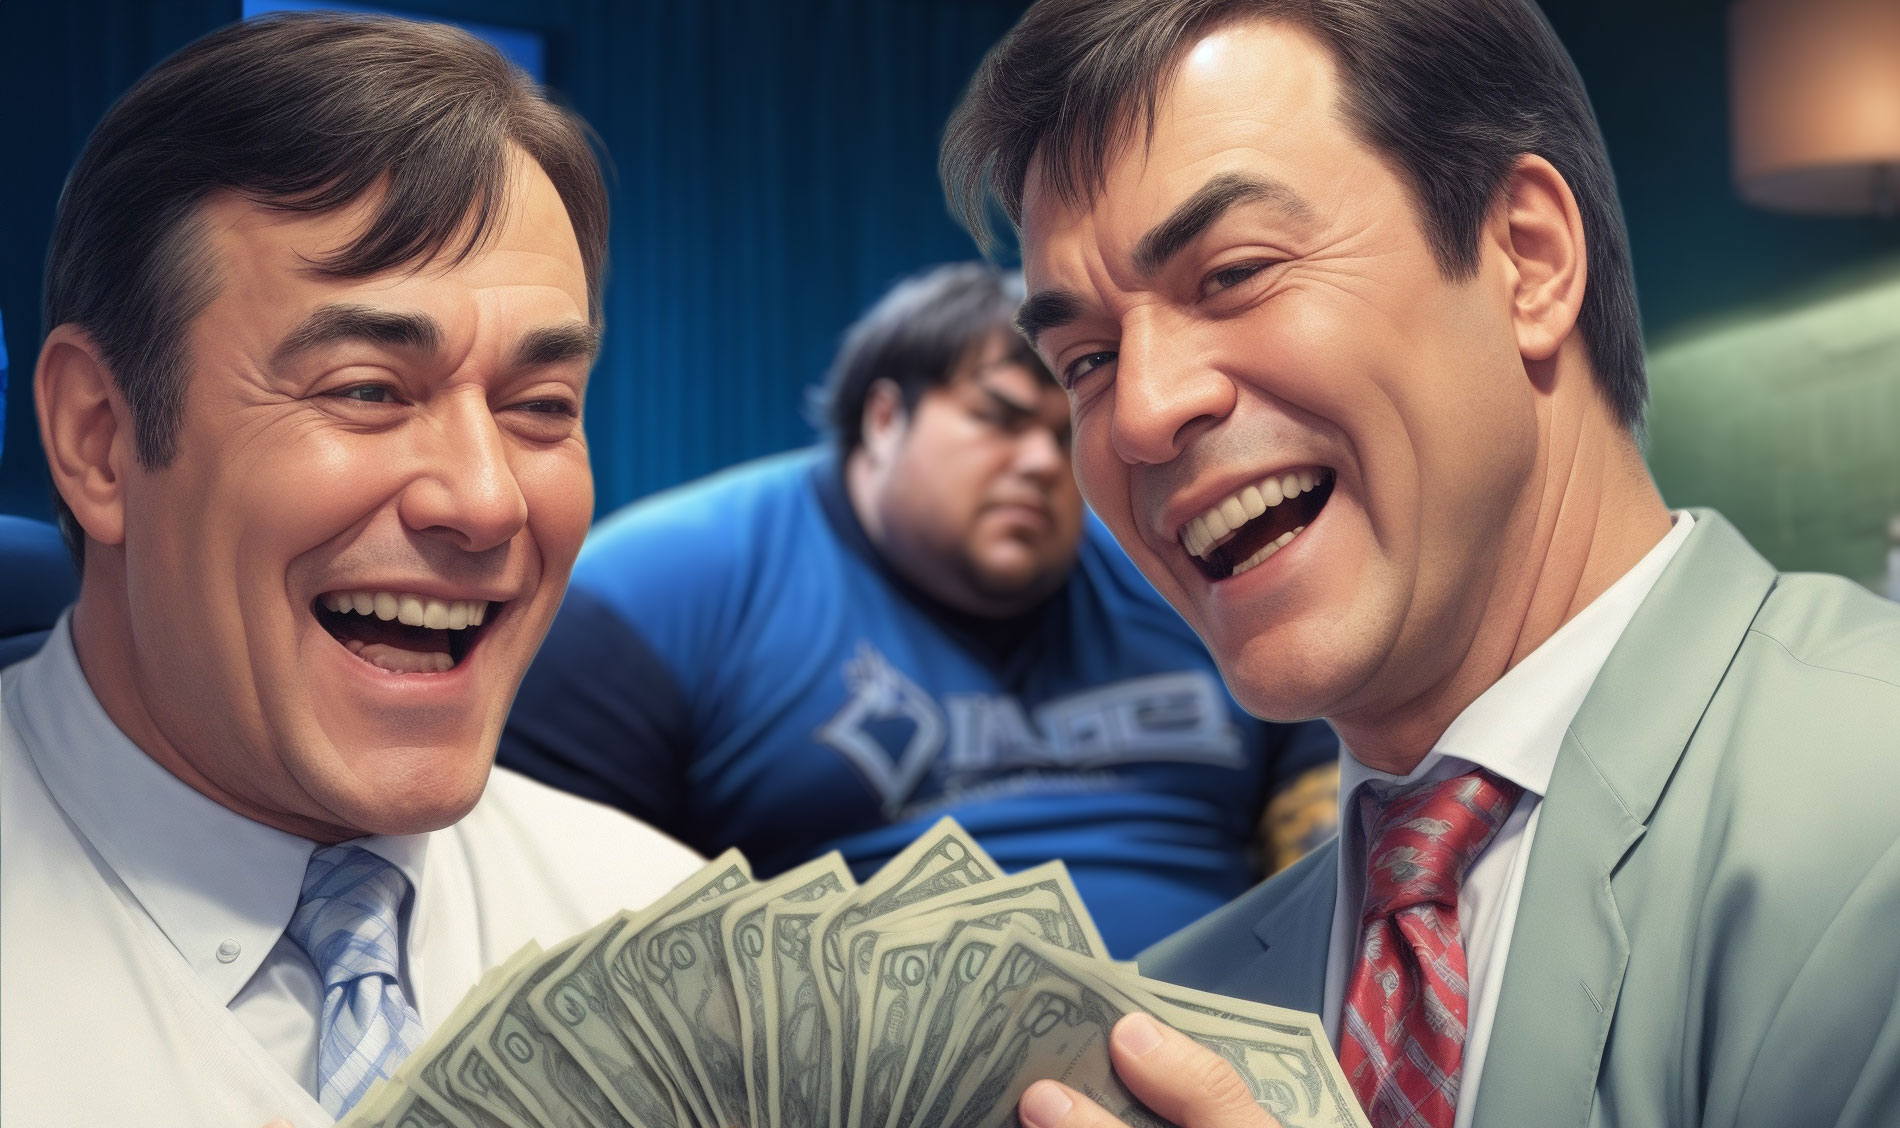 Bisnesmiehet nauravat rahatukon kanssa, kun pelaaja suree taustalla.